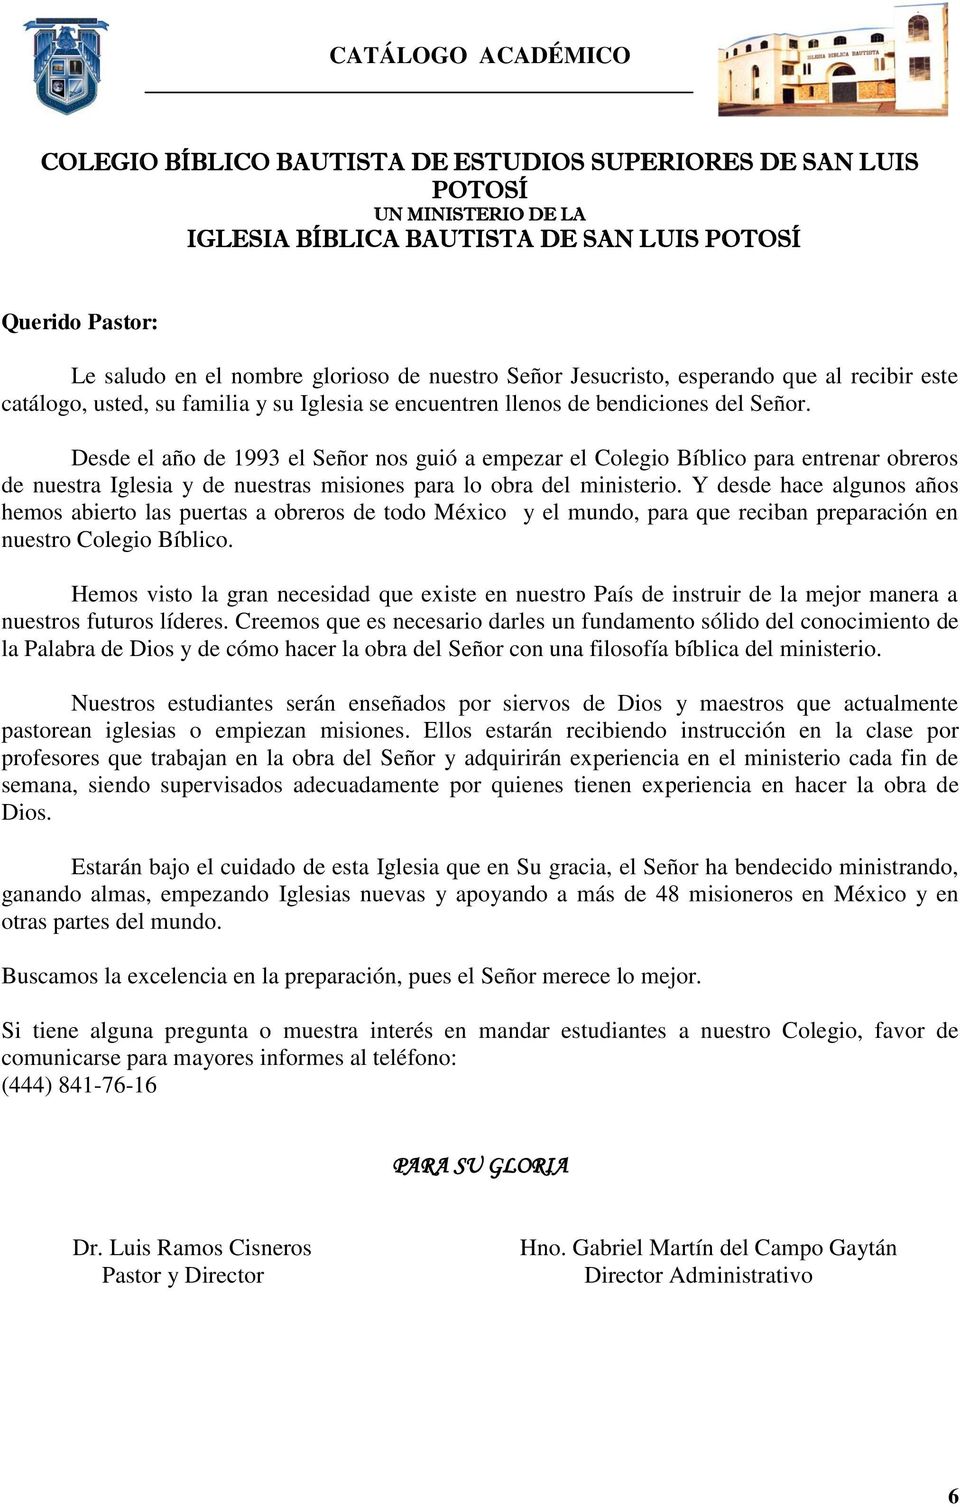 CATÁLOGO ACADÉMICO REGLAS GENERALES - PDF Free Download